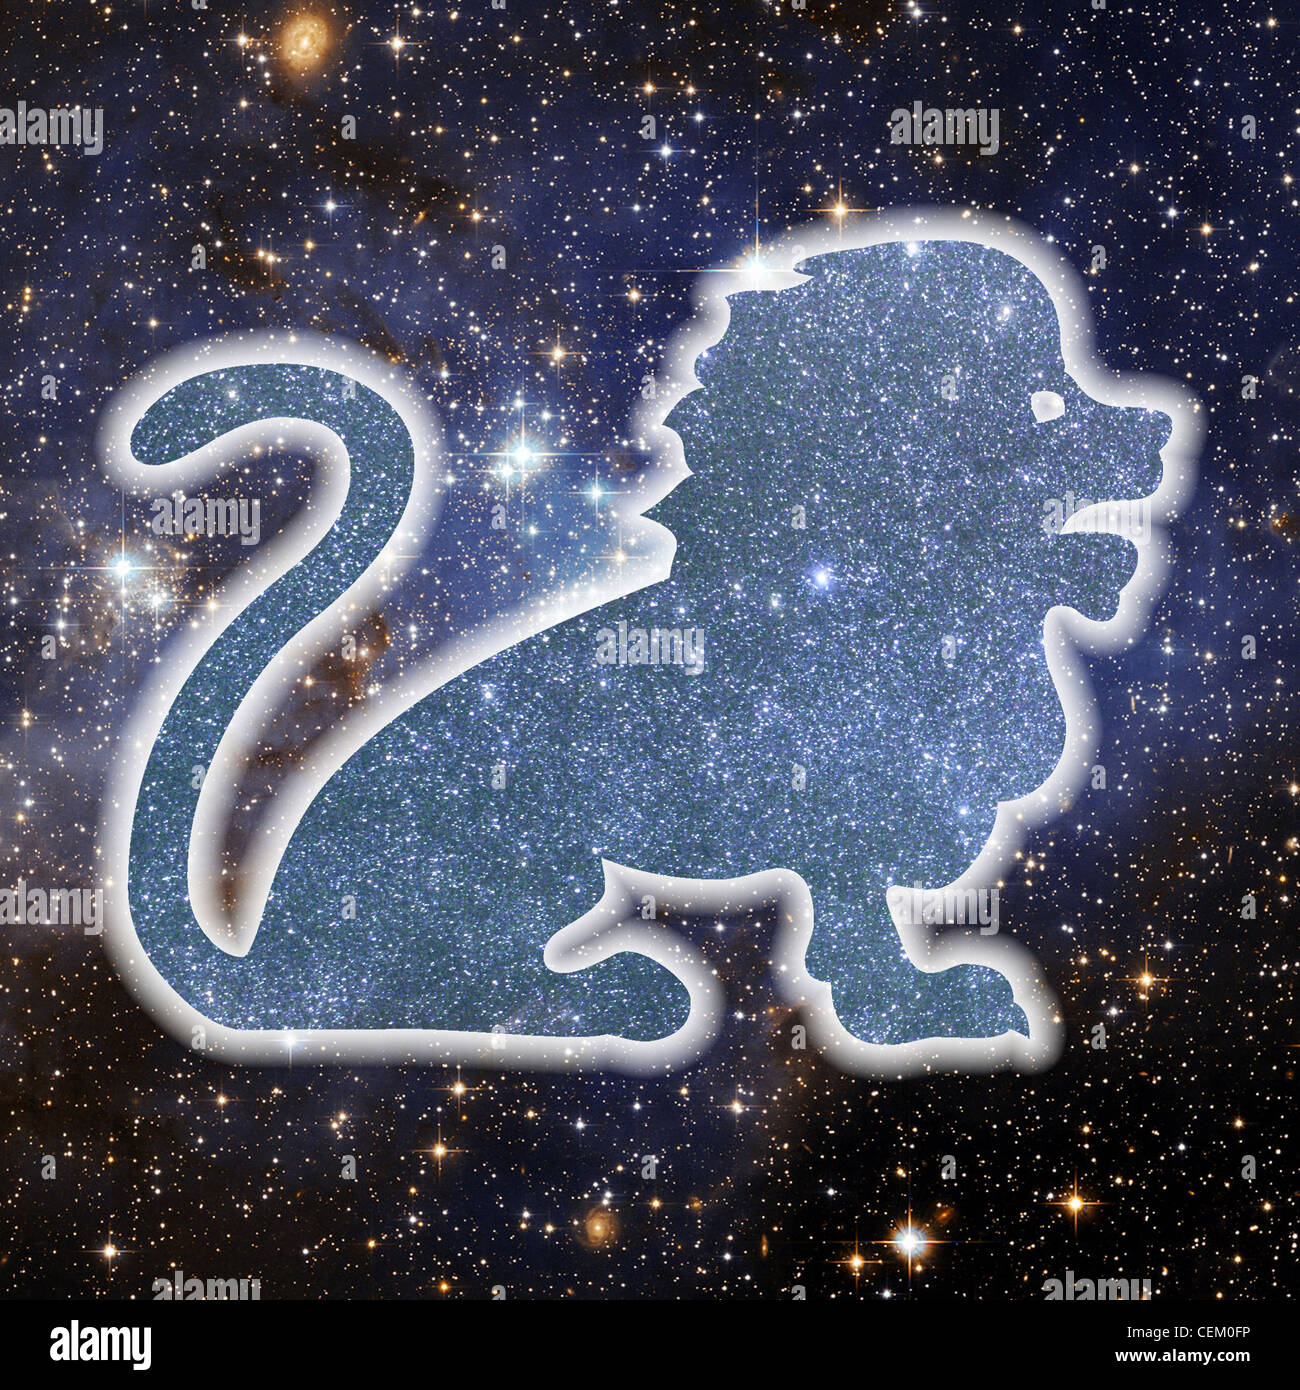 Una illustrazione della silhouette di un leone, fatta di stelle, impostata su uno sfondo di spazio riempito di stelle Foto Stock